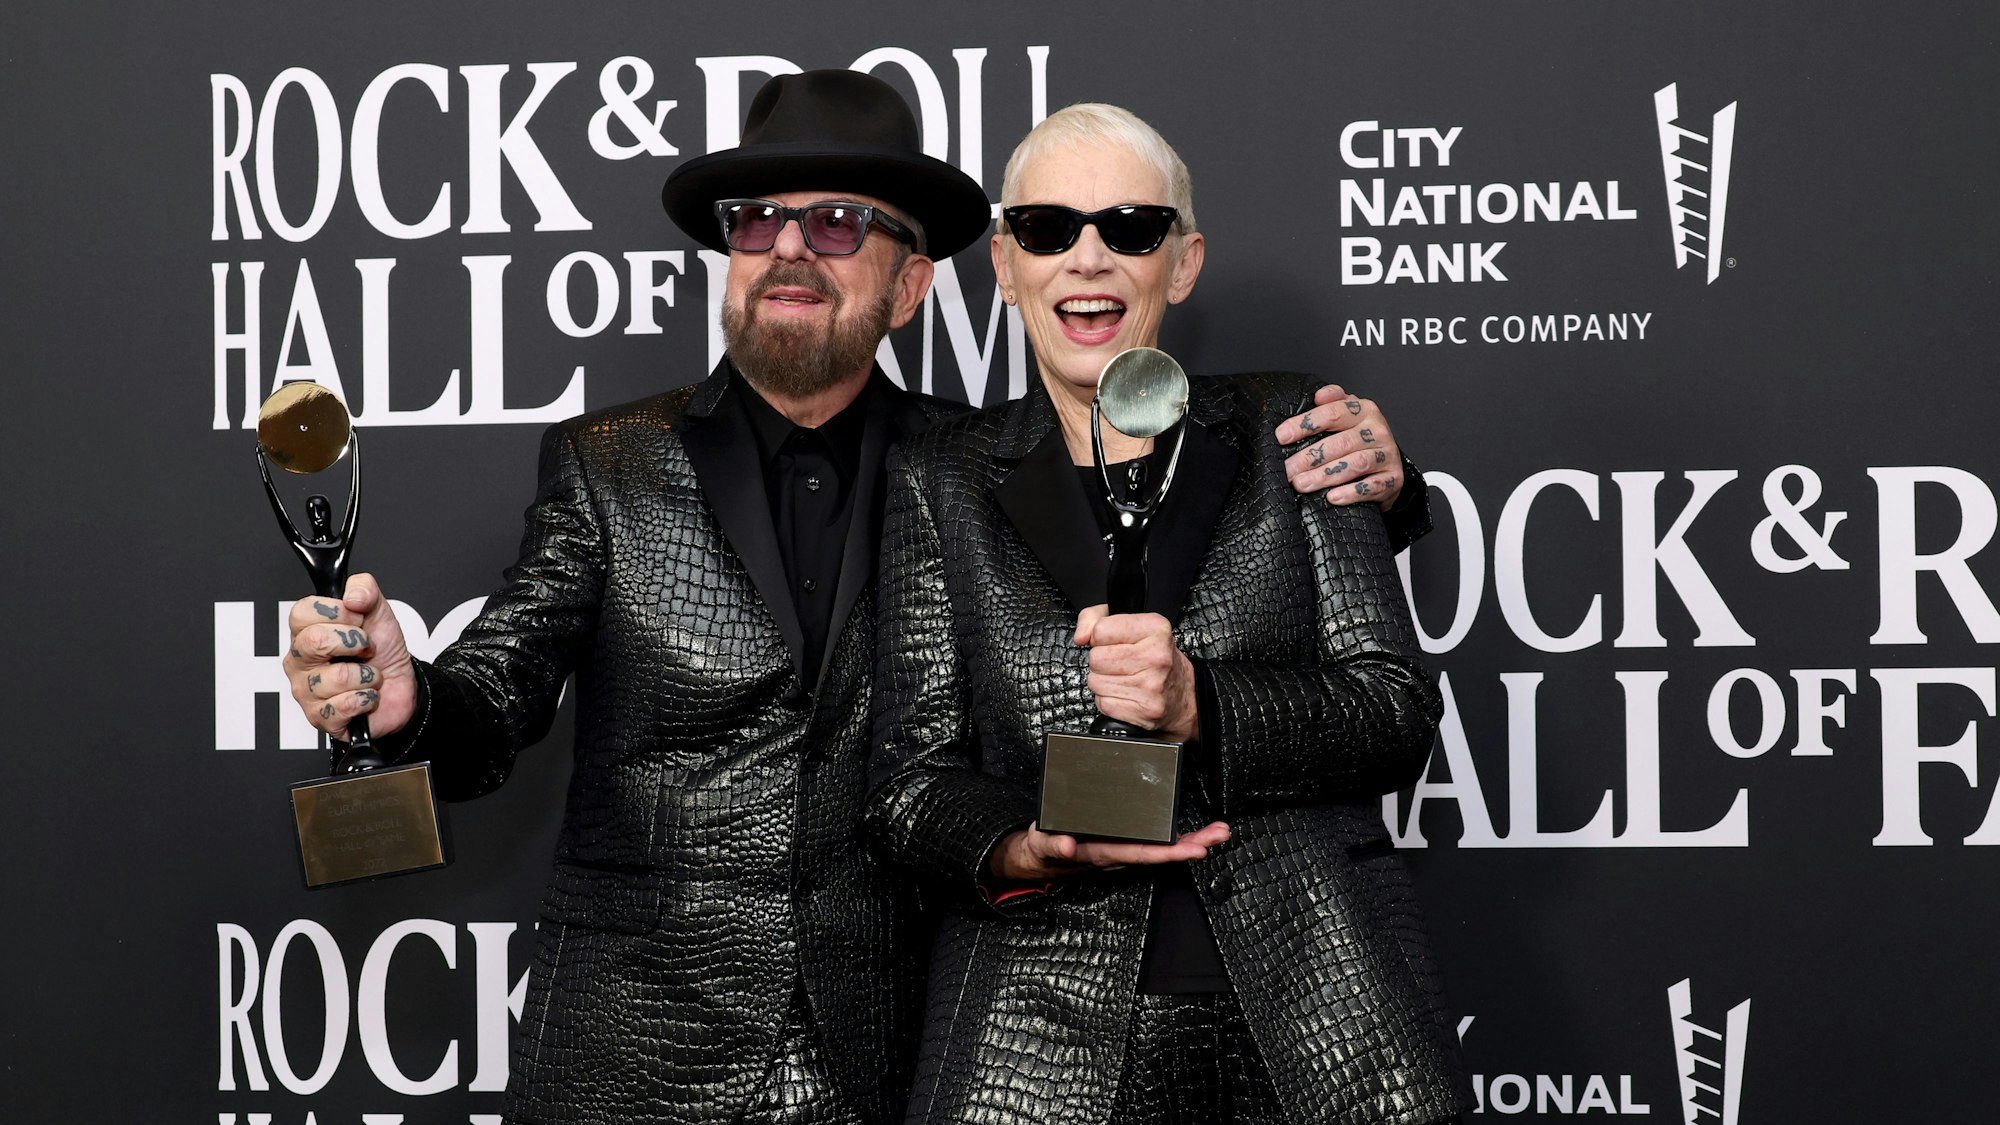 Dave Stewart und Annie Lennox bei der Pressekonferenz mit den Statuen der „Rock and Roll Hall of Fame“. Sie tragen schwarze Anzüge.